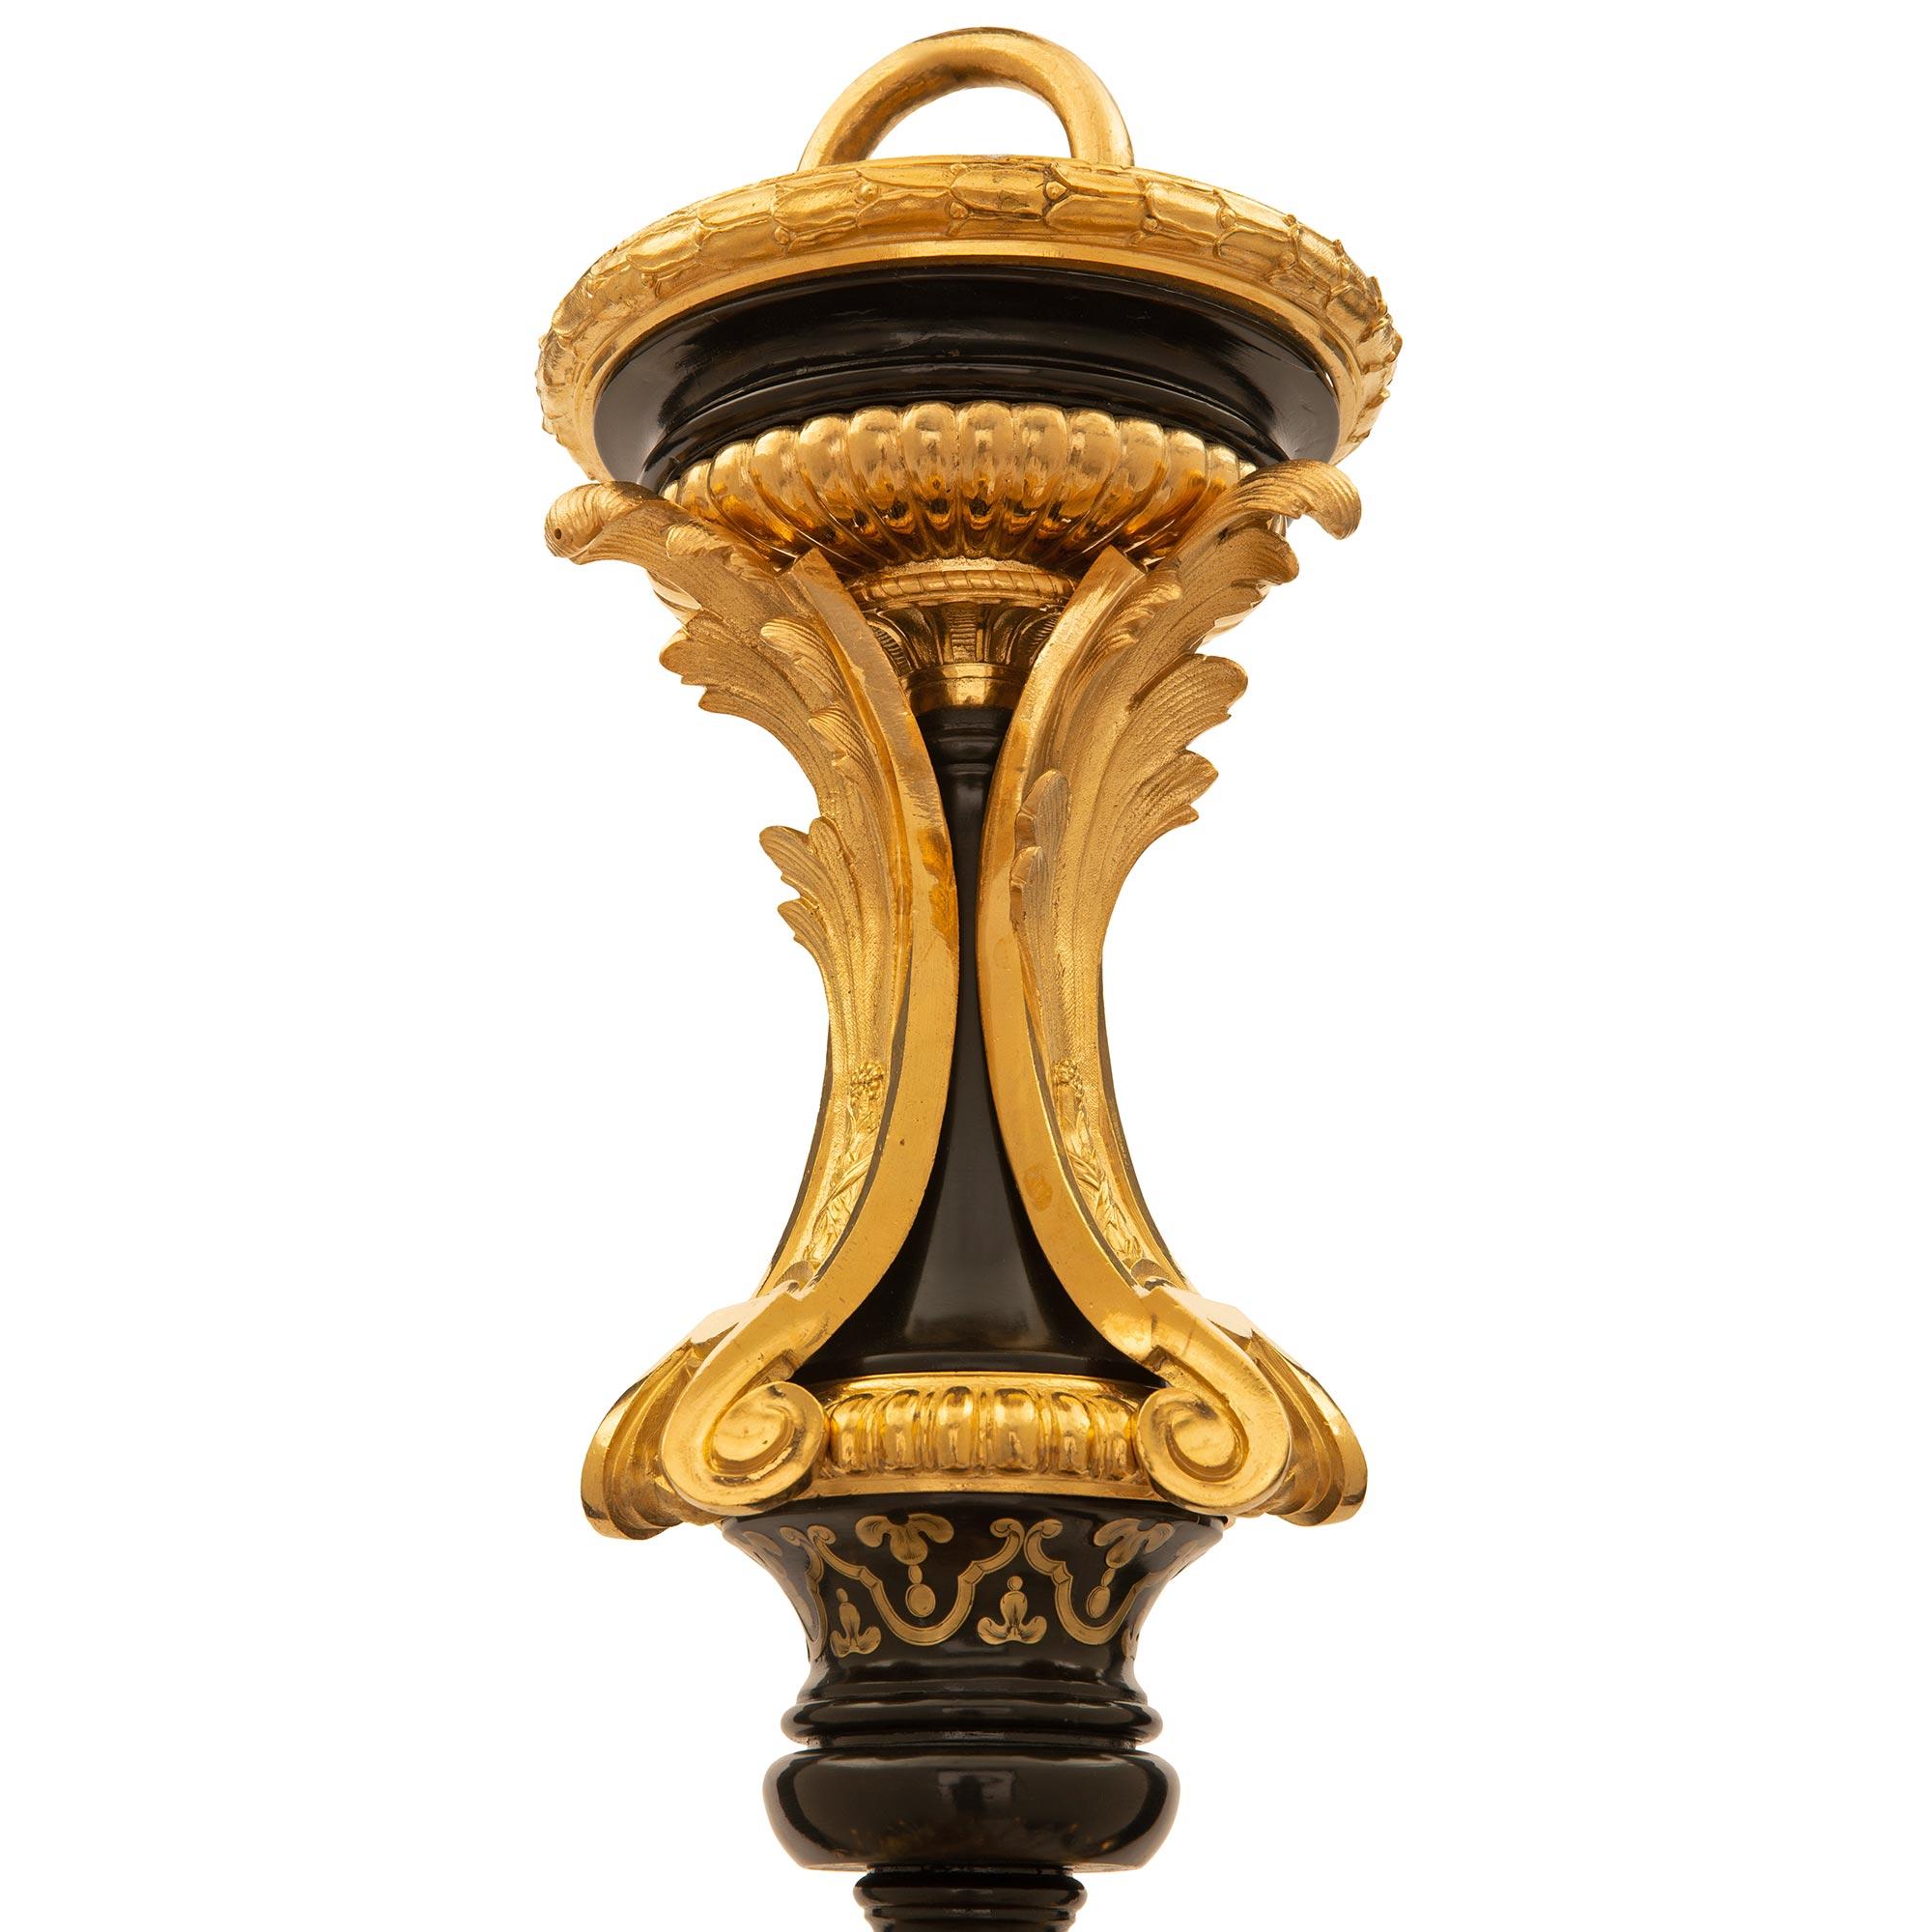 Superbe lustre français du 19ème siècle de style Louis XVI en ébène, écaille de tortue et laiton incrusté, provenant de la collection de Charles Aznavour. Le lustre à vingt-sept lumières est centré par un épingle à glands en bronze doré richement